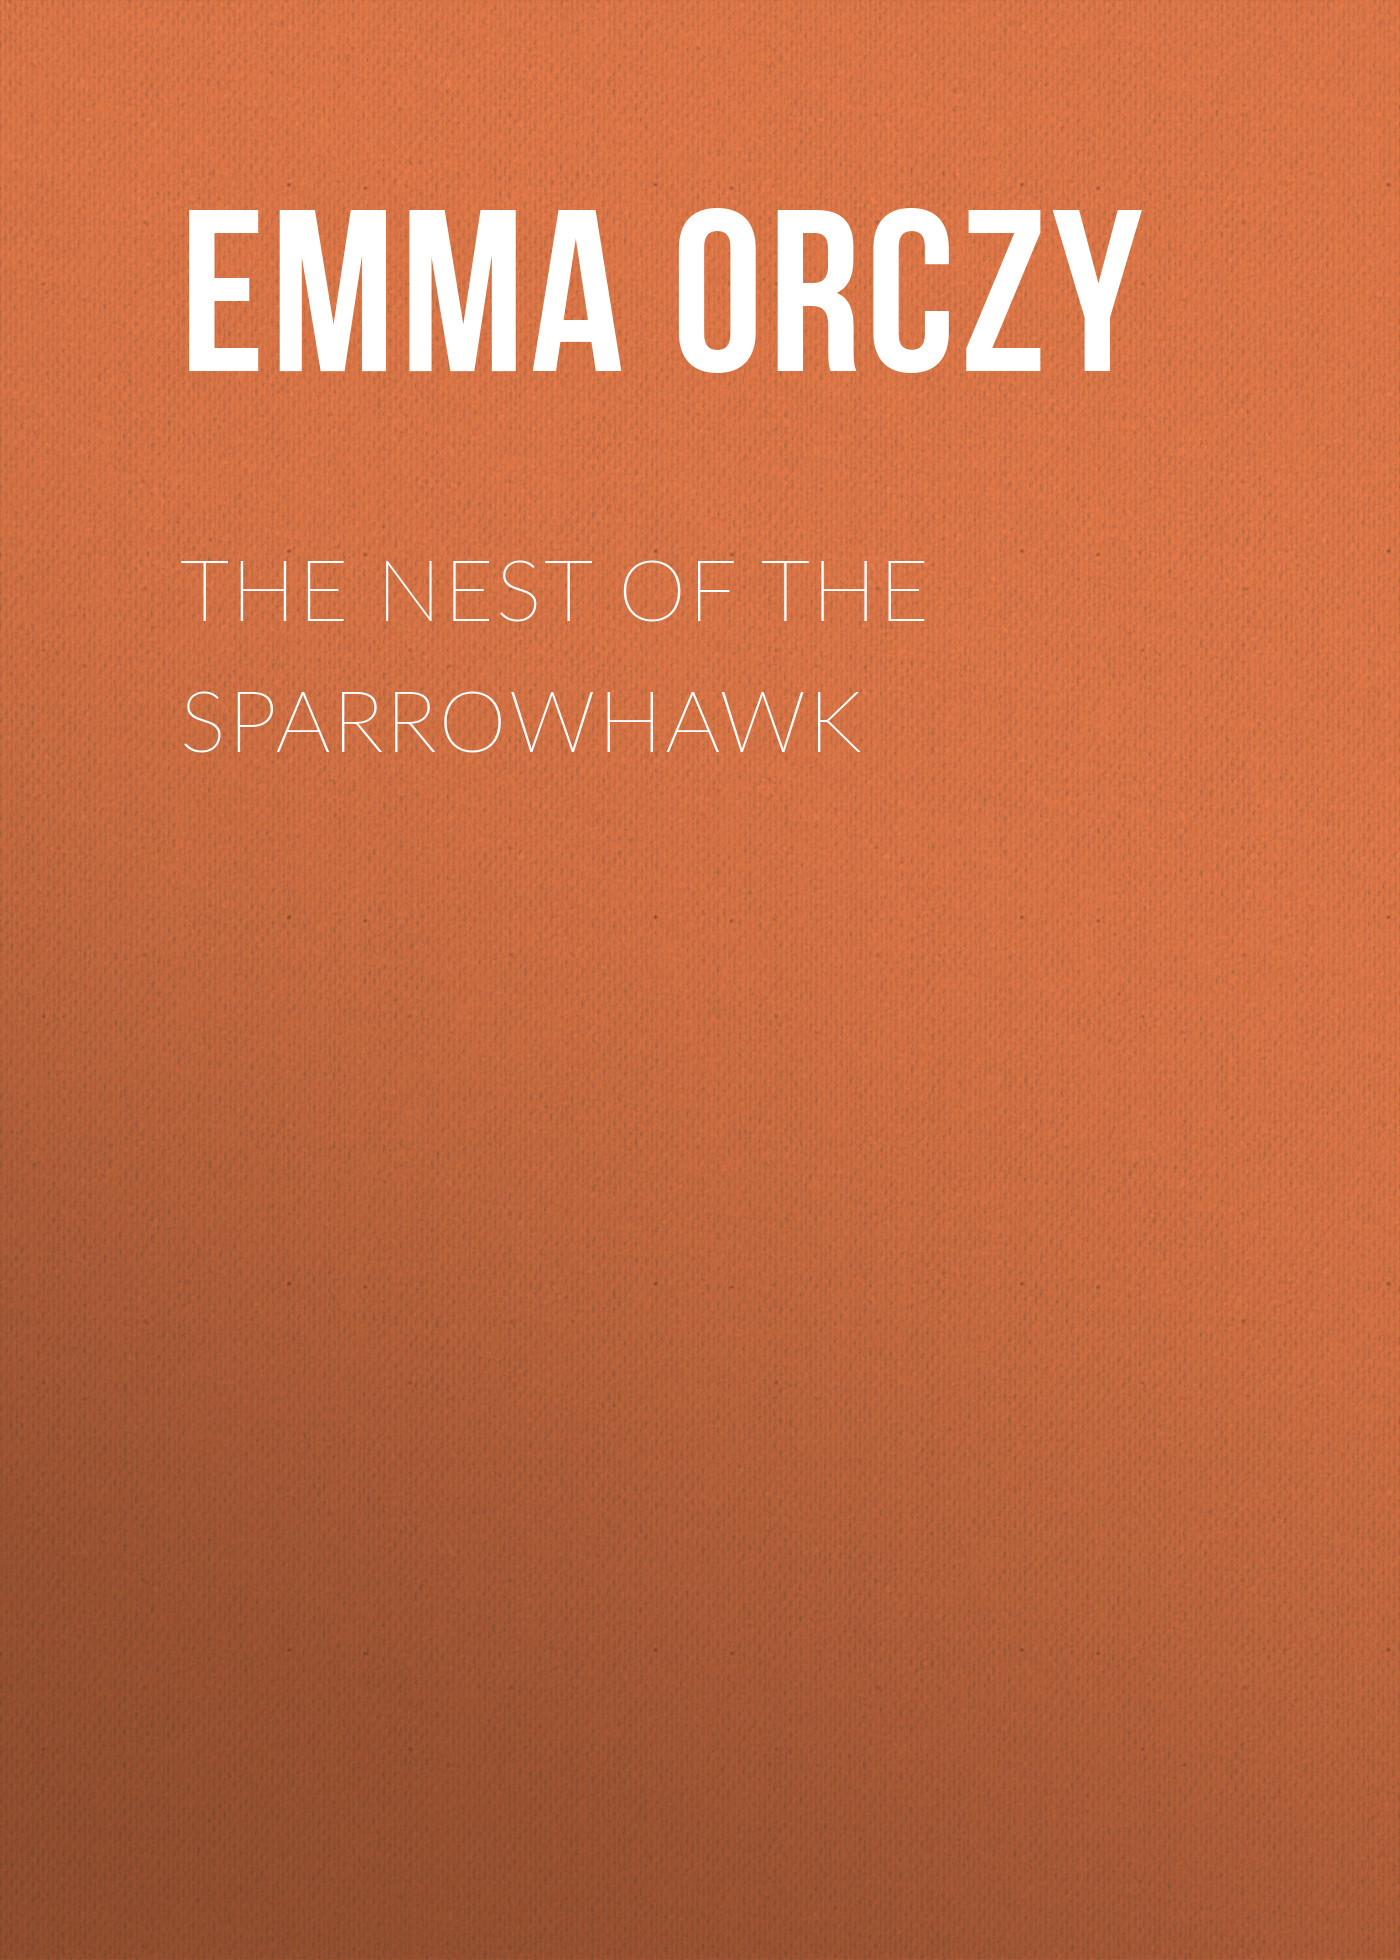 Книга The Nest of the Sparrowhawk из серии , созданная Emma Orczy, написана в жанре Историческая фантастика, Зарубежная старинная литература, Зарубежная классика, Исторические приключения. Стоимость электронной книги The Nest of the Sparrowhawk с идентификатором 34840990 составляет 0 руб.